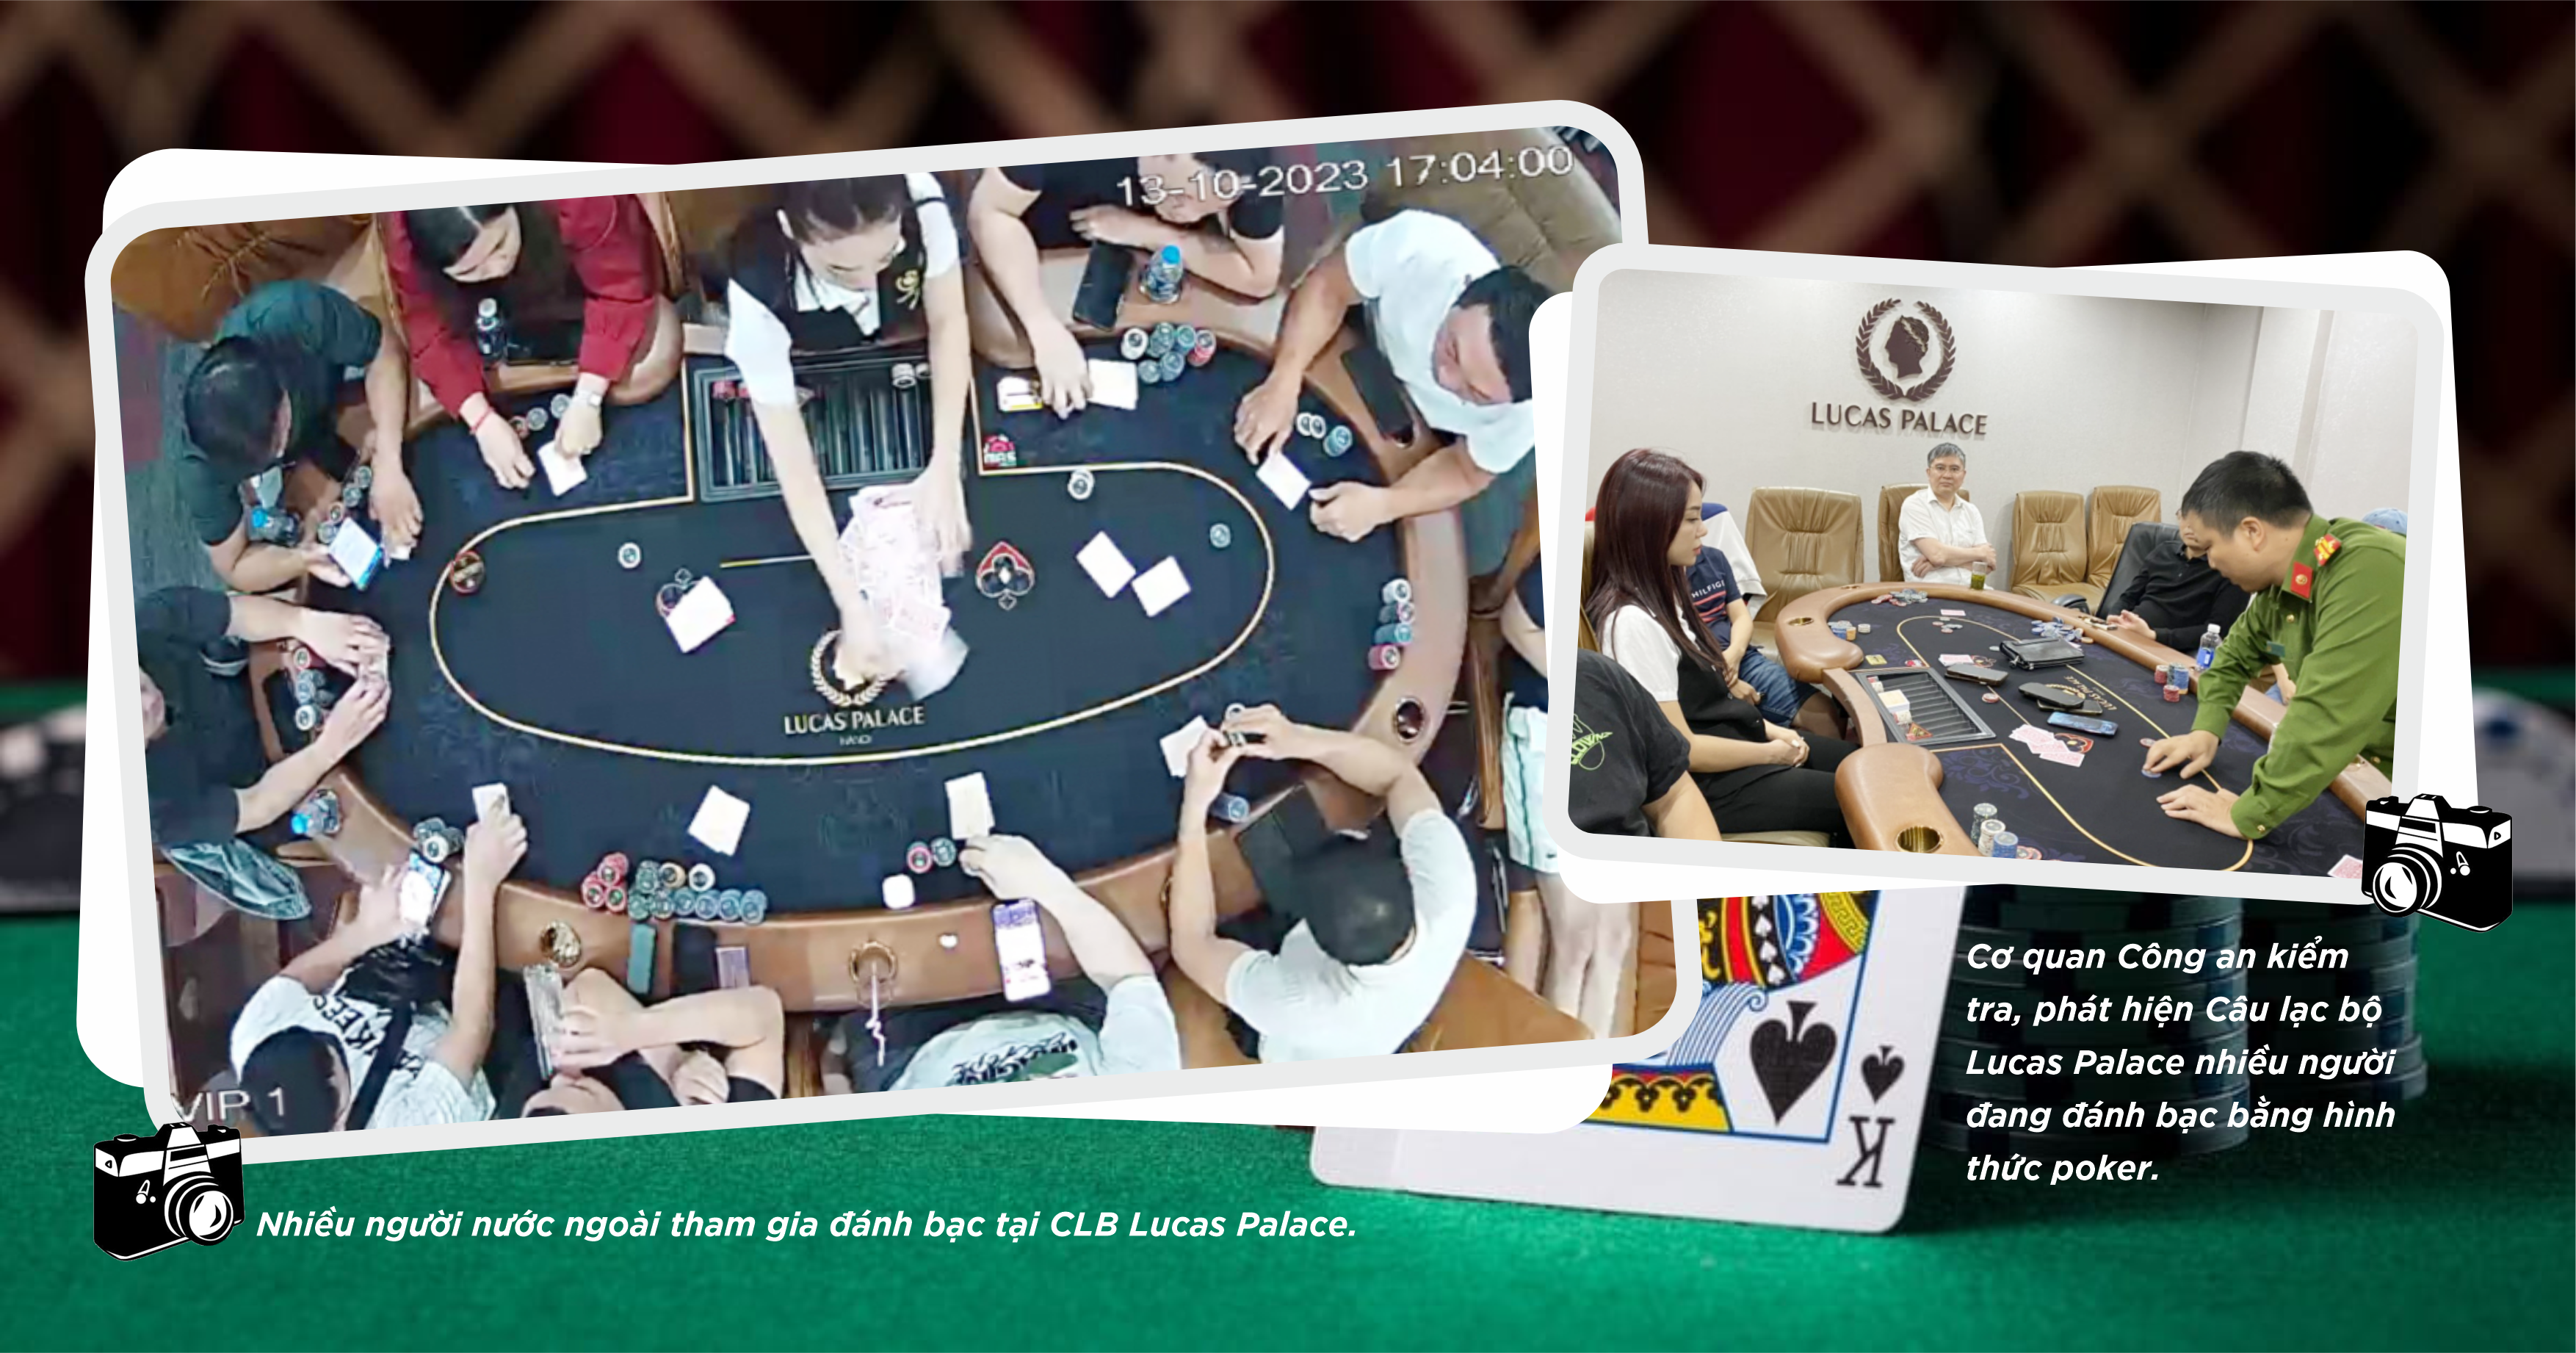 Kỳ 2: Poker biến tướng thành “đánh bạc trá hình”